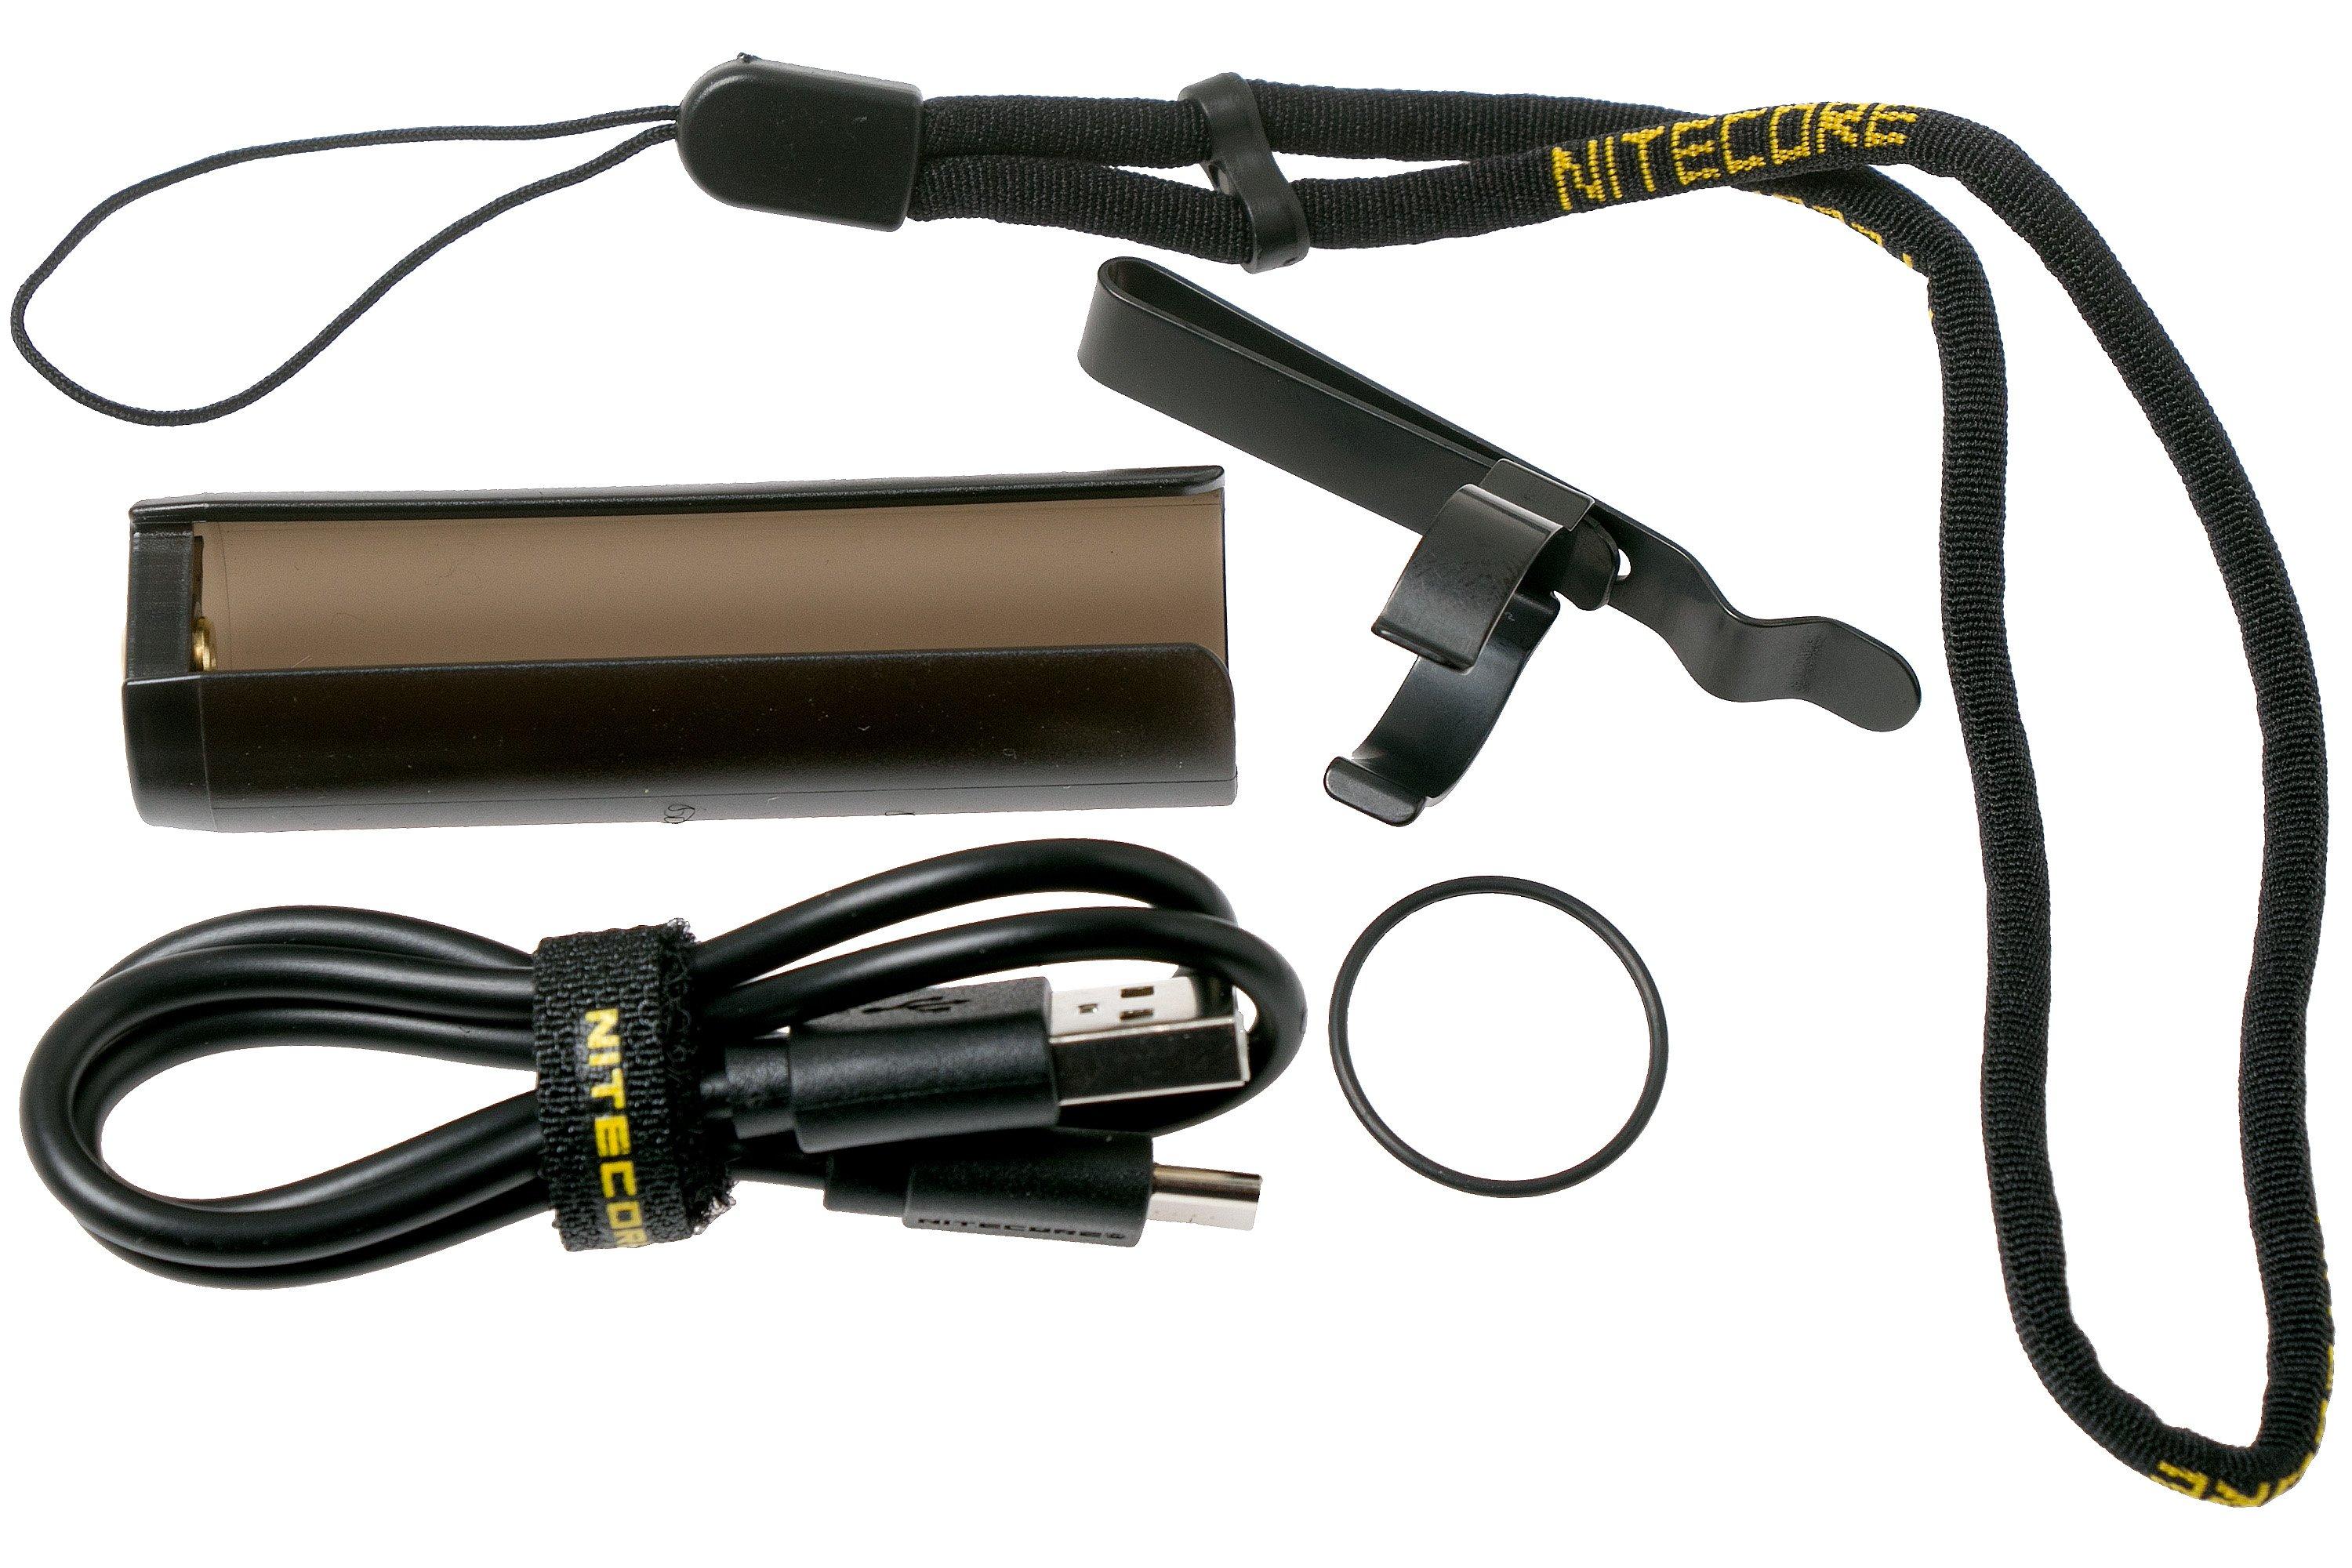 NITECORE Accessoires Pile rechargeable 21700 NL2150HPR avec micro